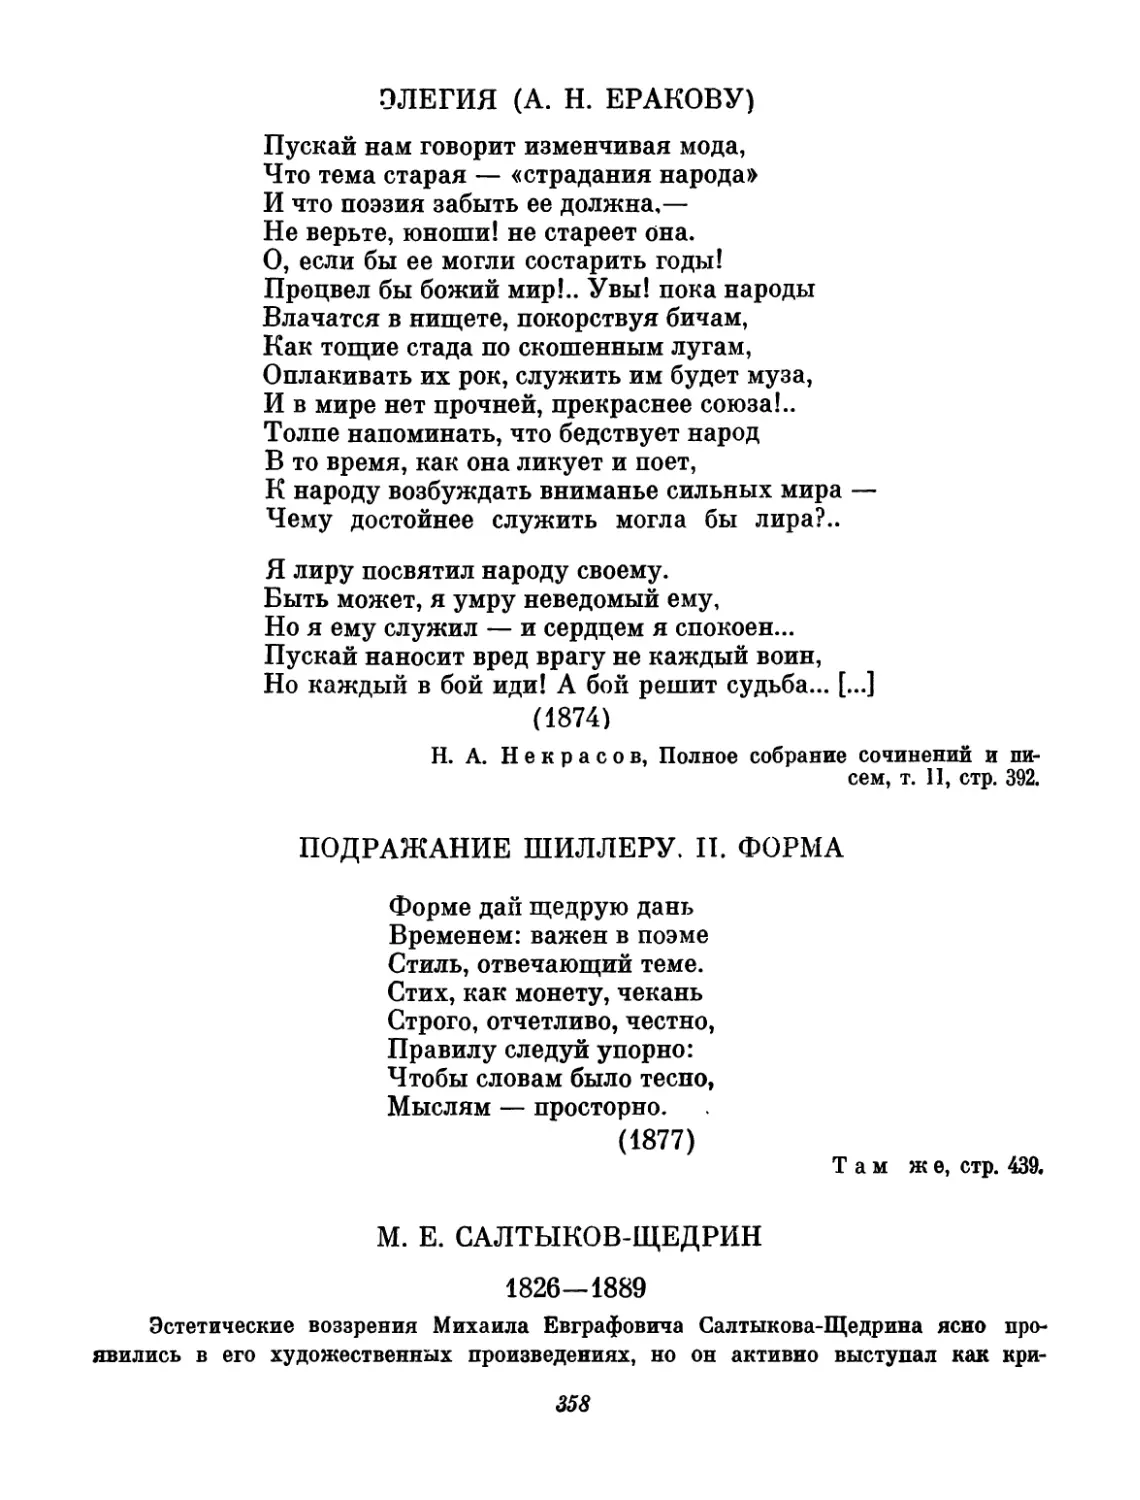 Салтыков-Щедрин. Вступительный т-екст и составление М. И. Ульмана